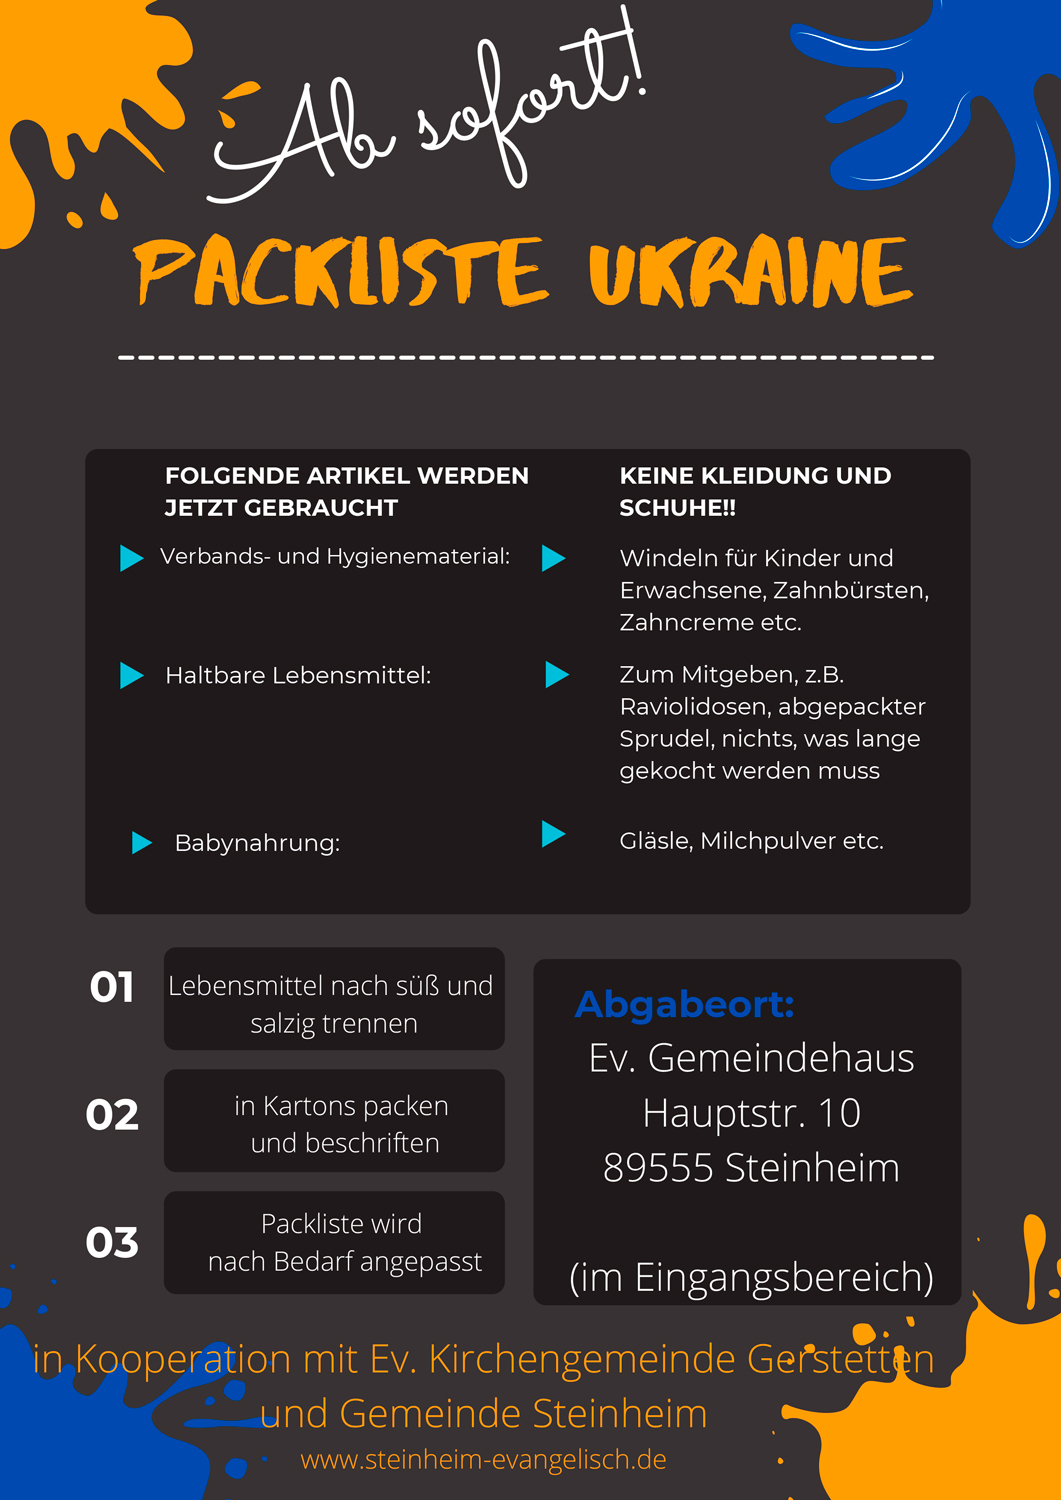 Packliste-Ukraine-Flyer-richtig